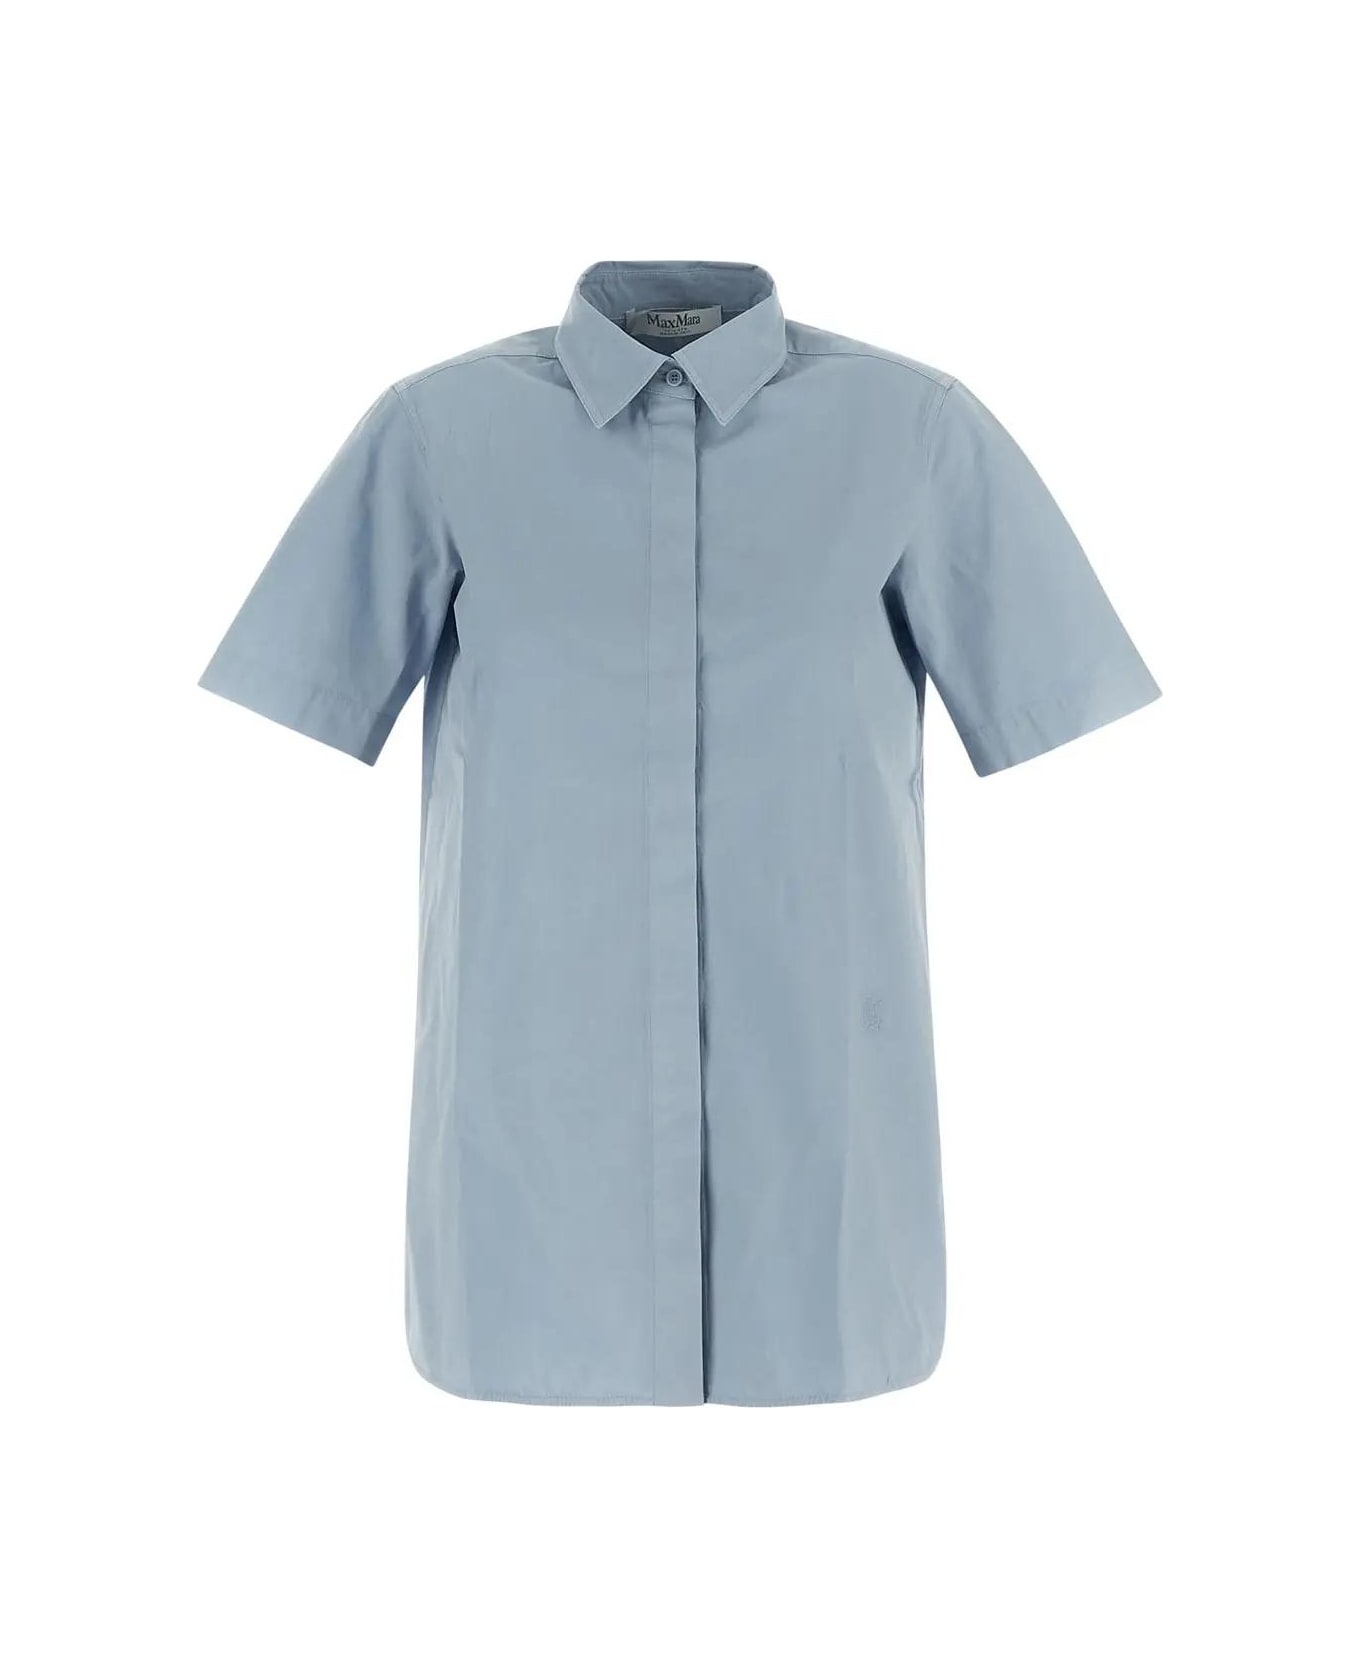 Max Mara Classic Shirt - Clear Blue シャツ